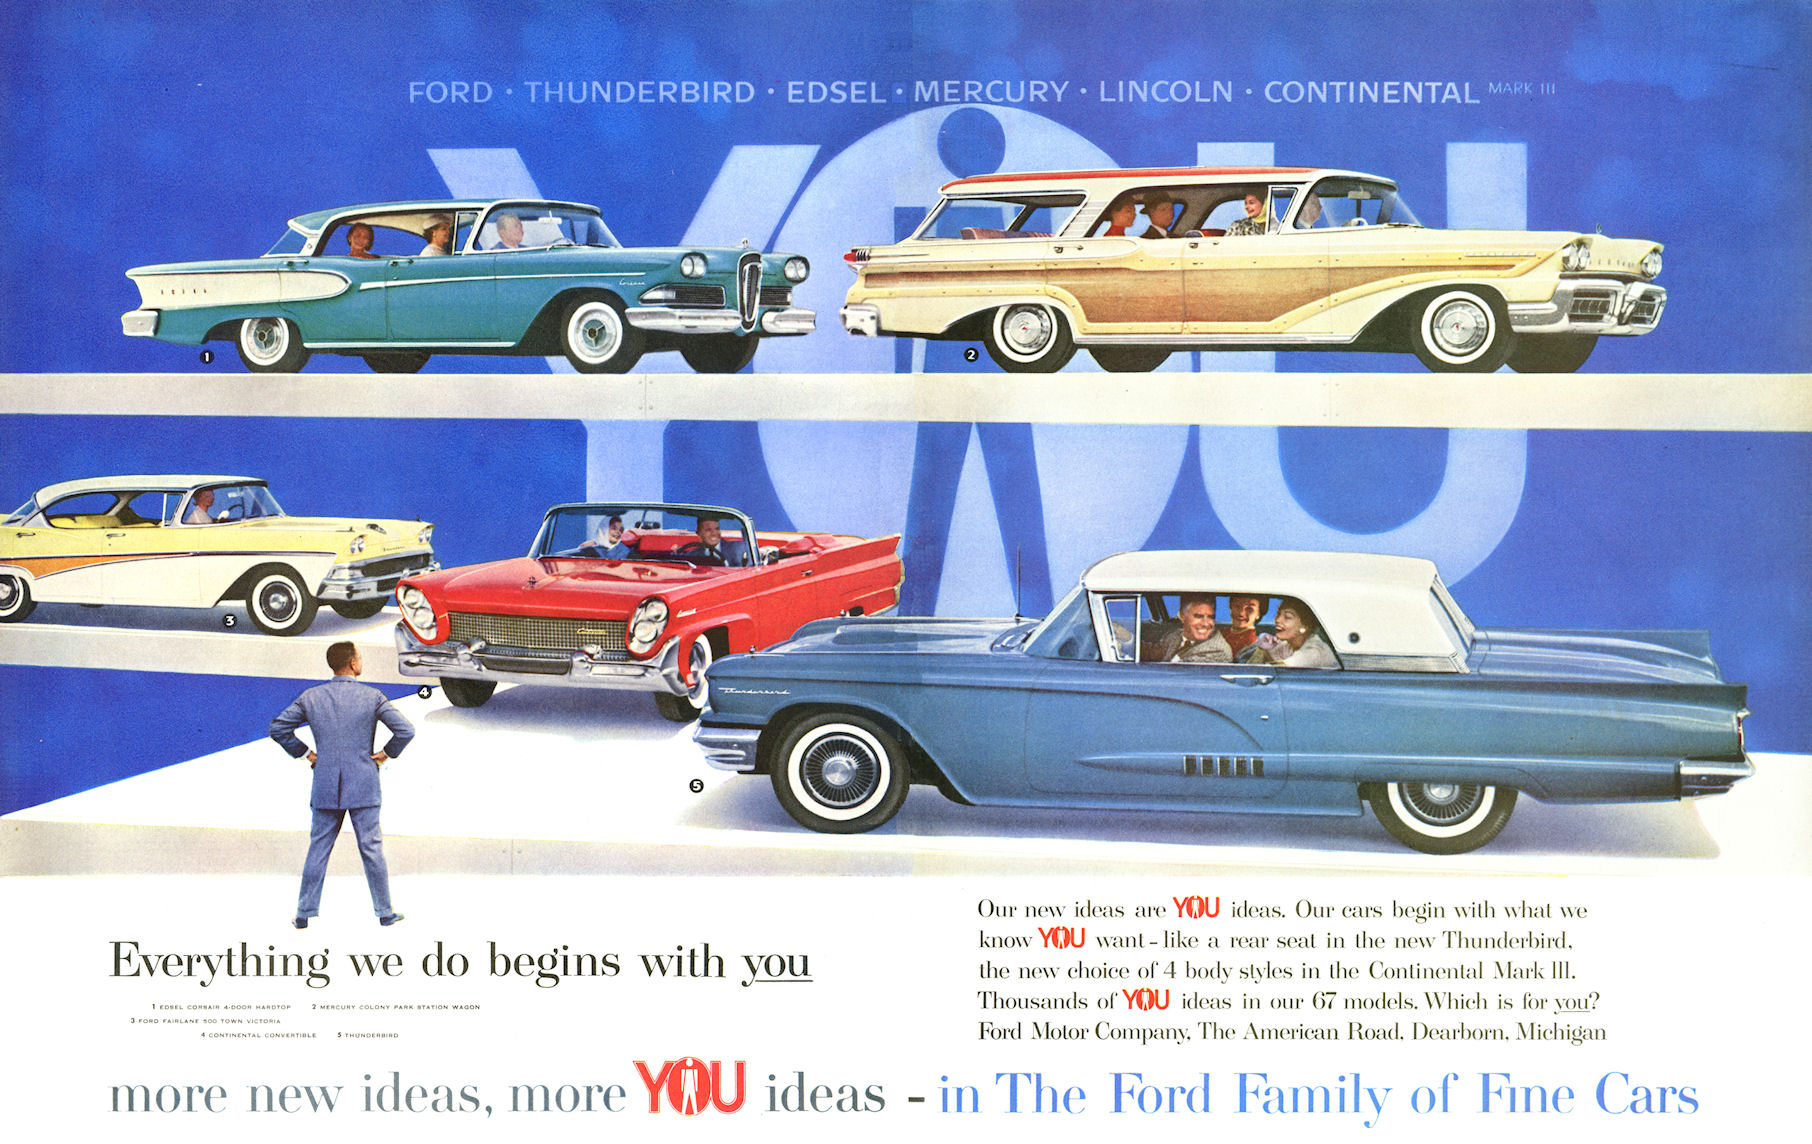 LOVEfords - Famille de Belles voitures Ford 1958 - #